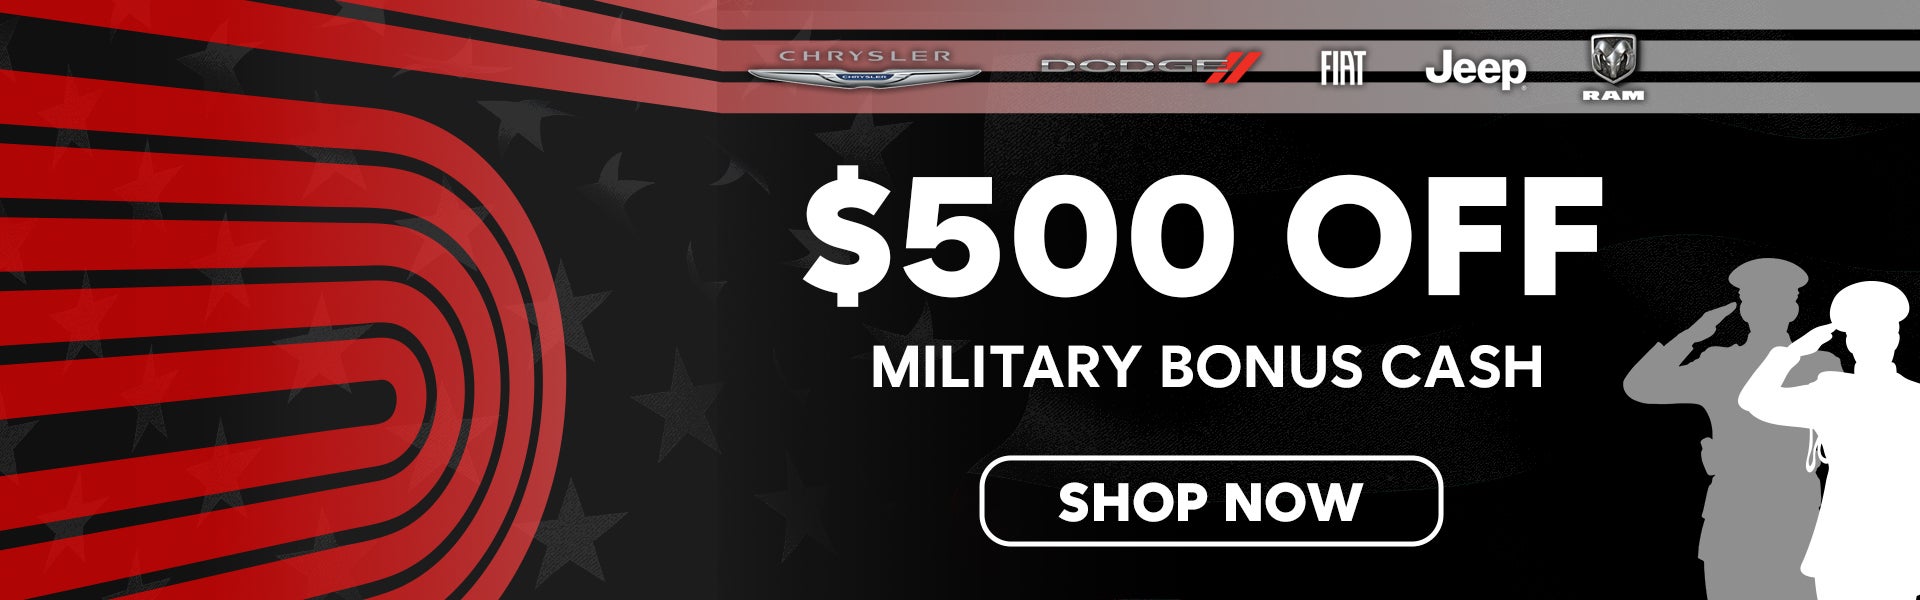 $500 Off Military Bonus Cash